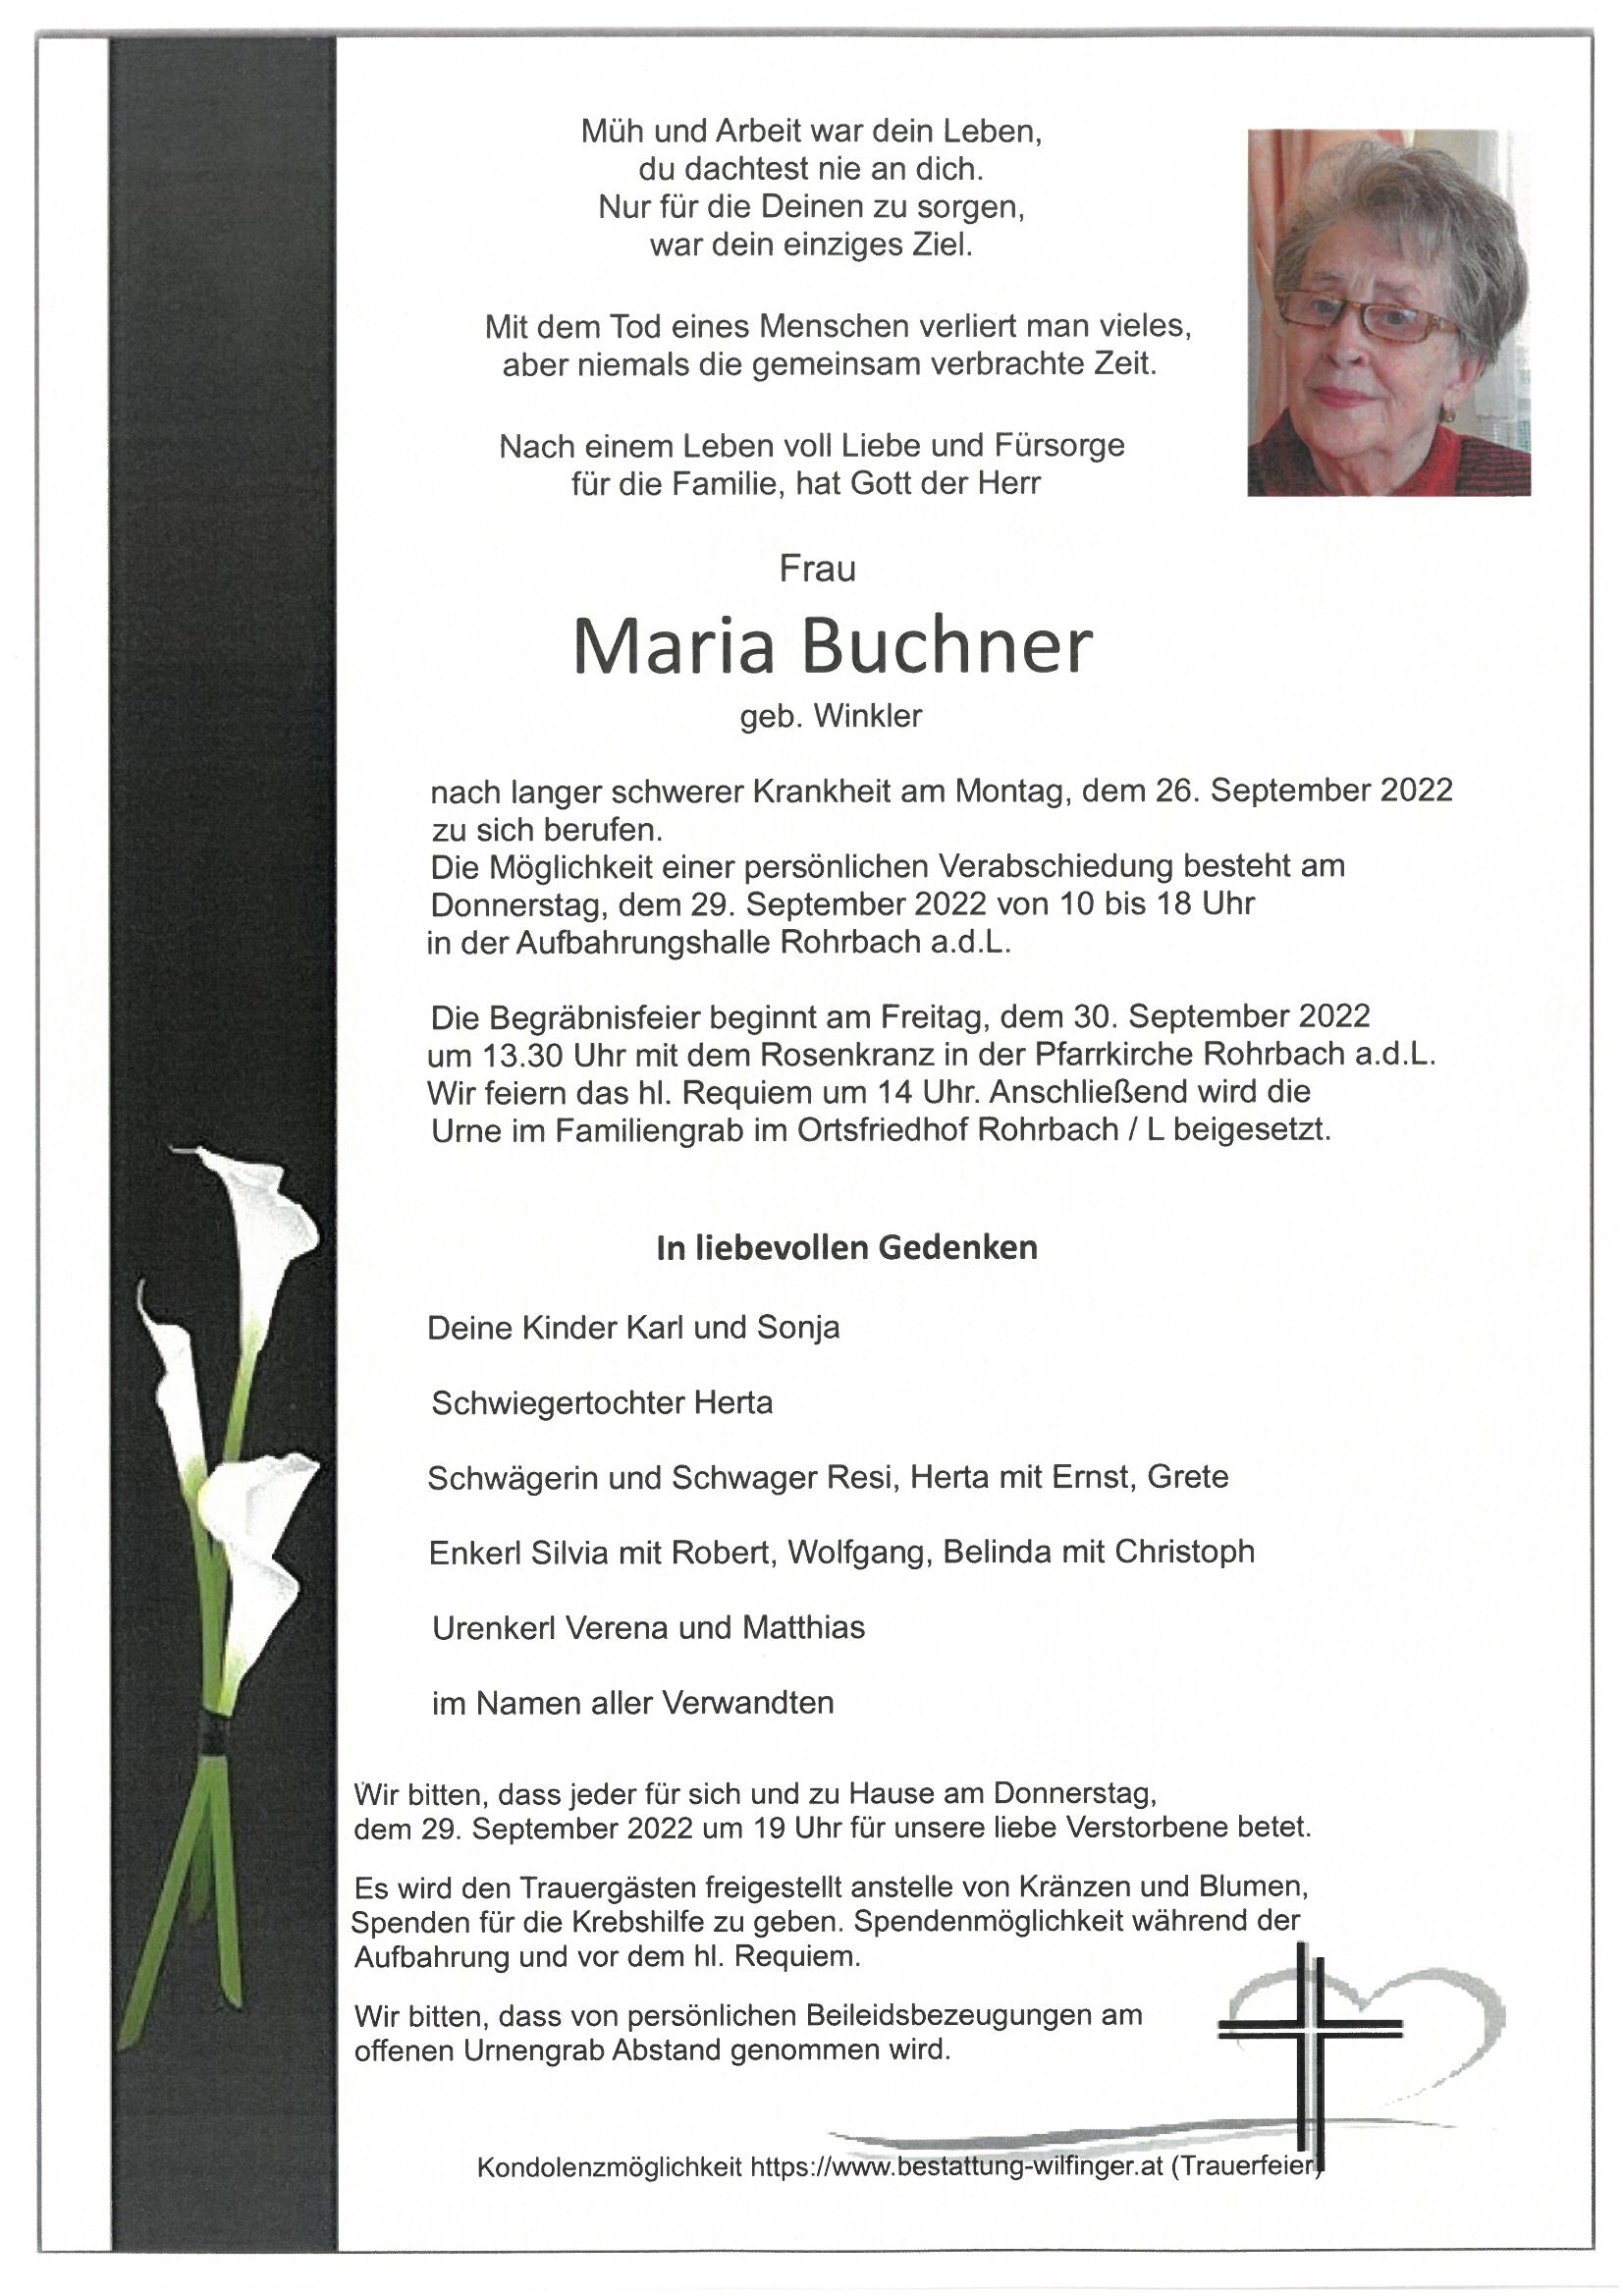 Maria Buchner, Rohrbach a.d.L.